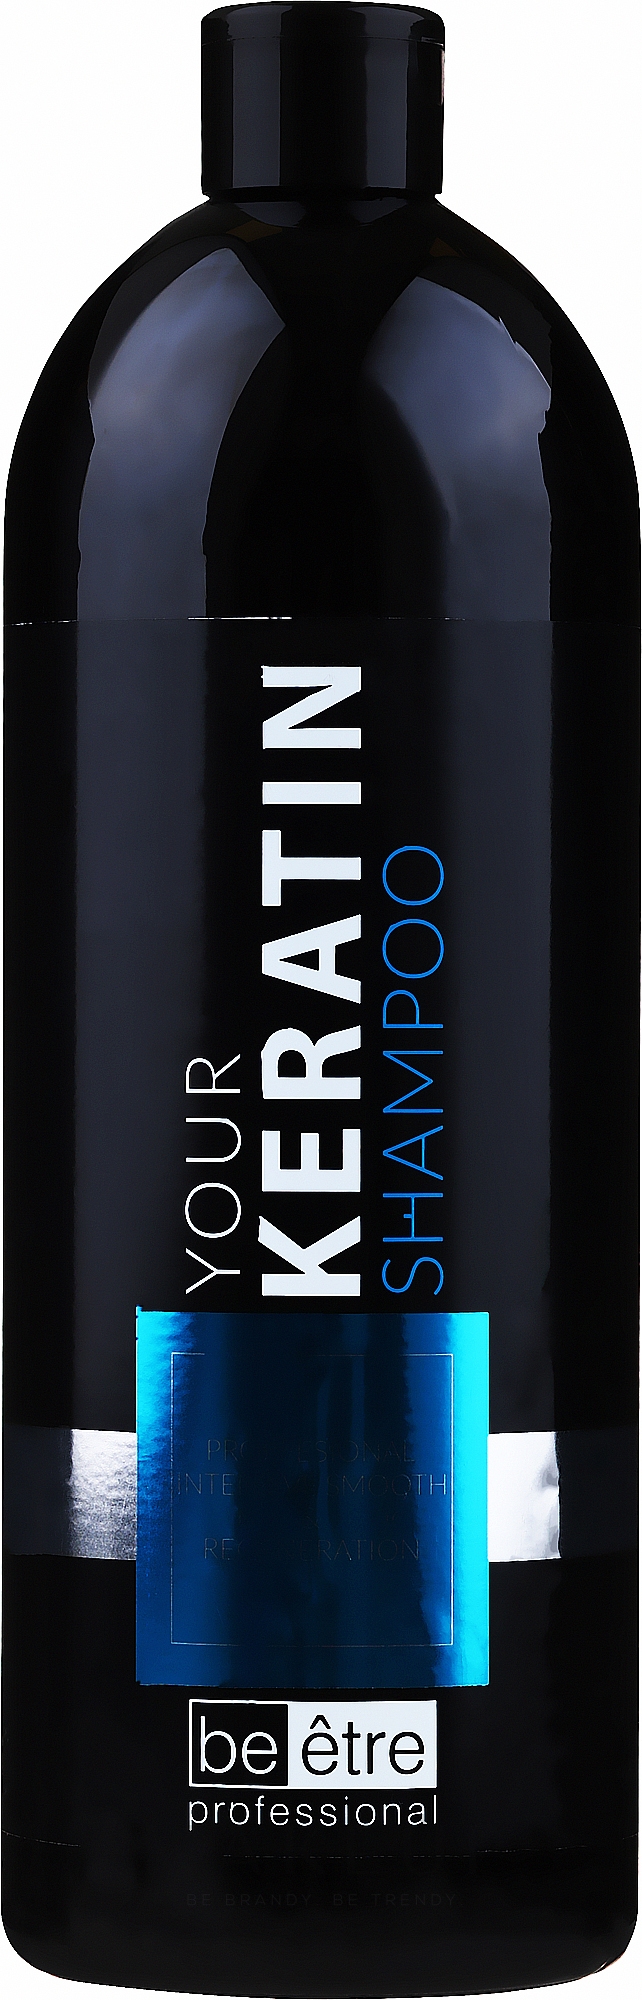 Glättendes und regenerierendes Shampoo mit Keratin - Beetre Your Keratin Shampoo — Bild 1000 ml